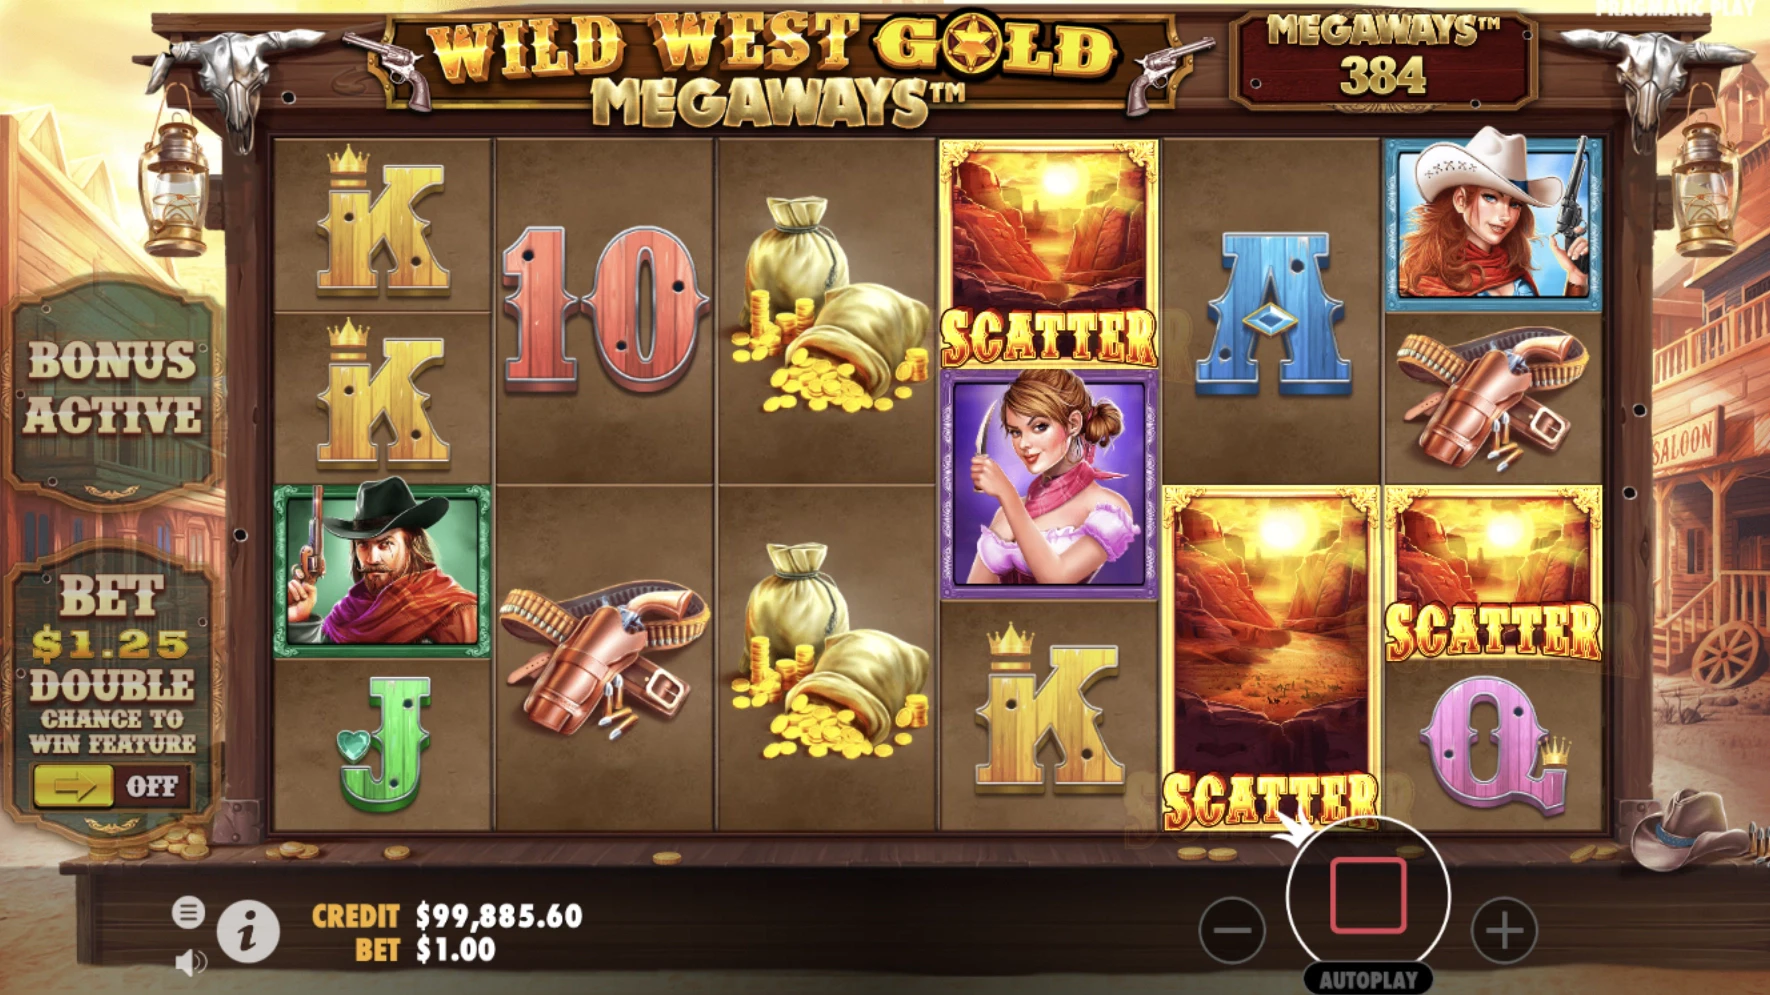 Obtention des parties bonus sur la machine a sous Wild West Gold Megaways du provider Pragmatic Play